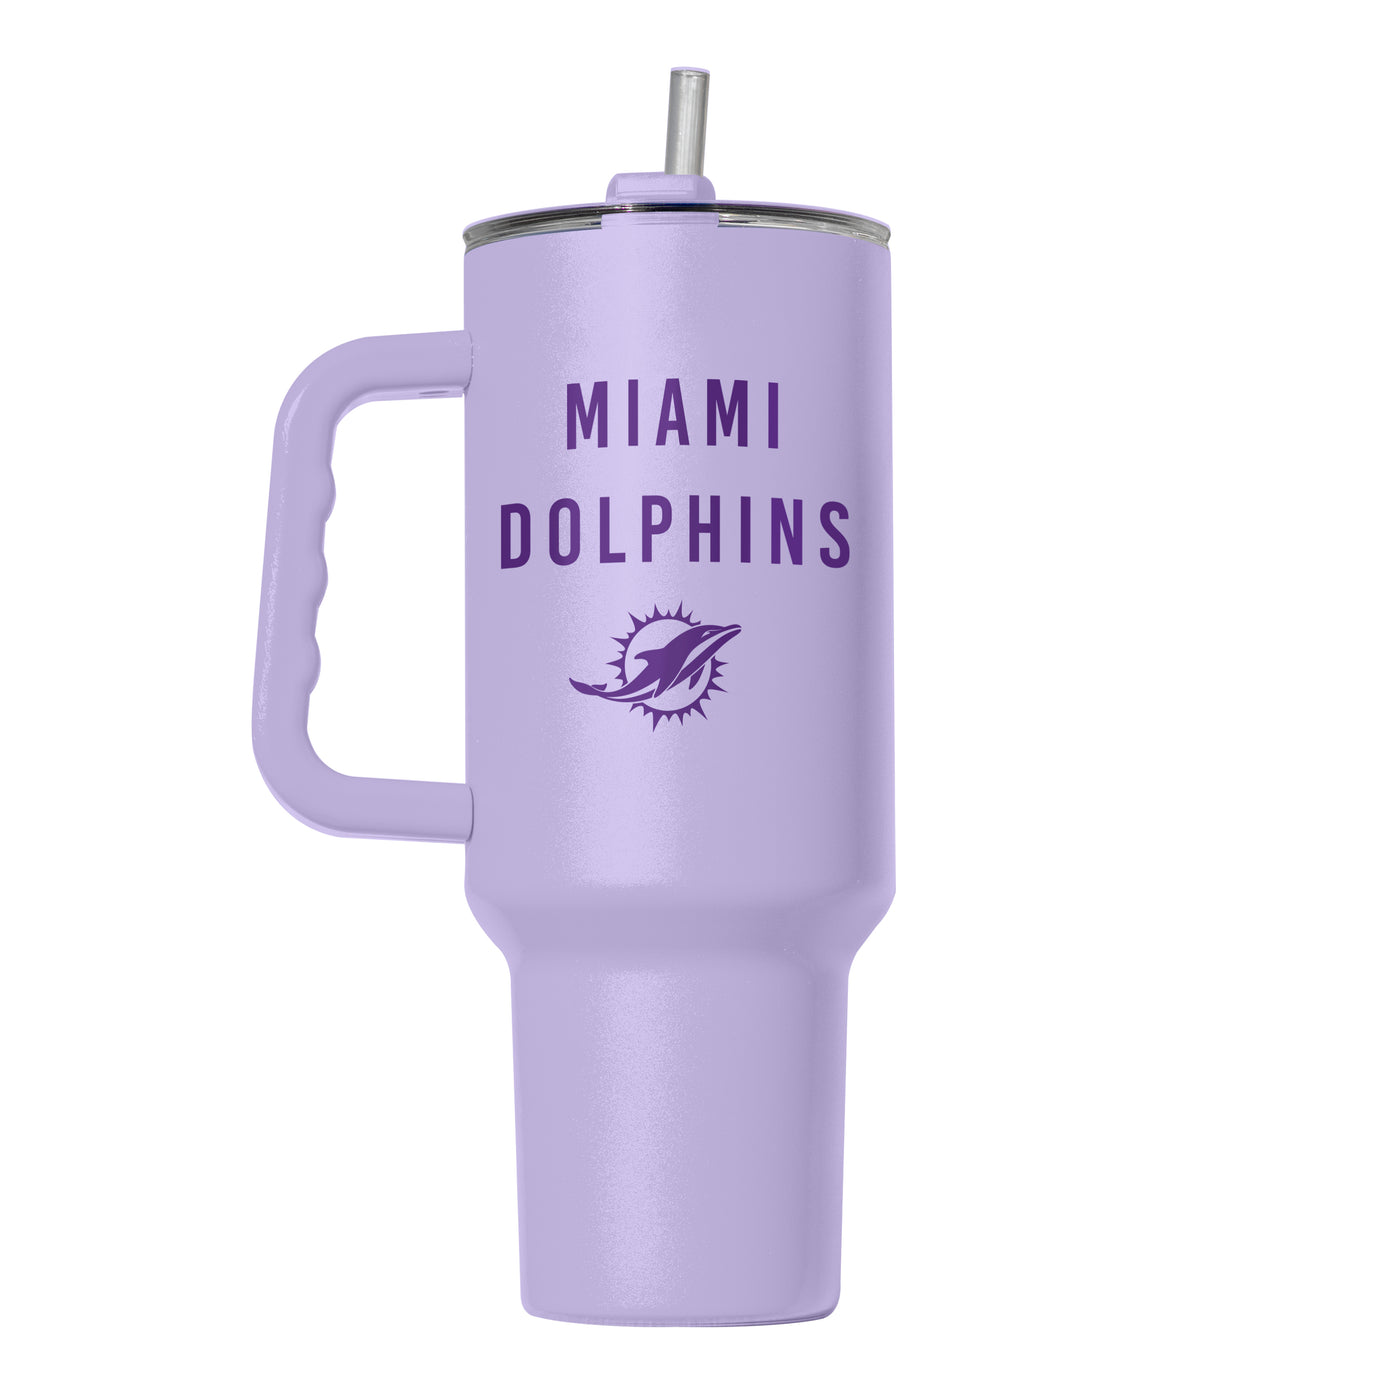 Miami Dolphins 40oz Tonal Lavender Powder Coat Tumbler